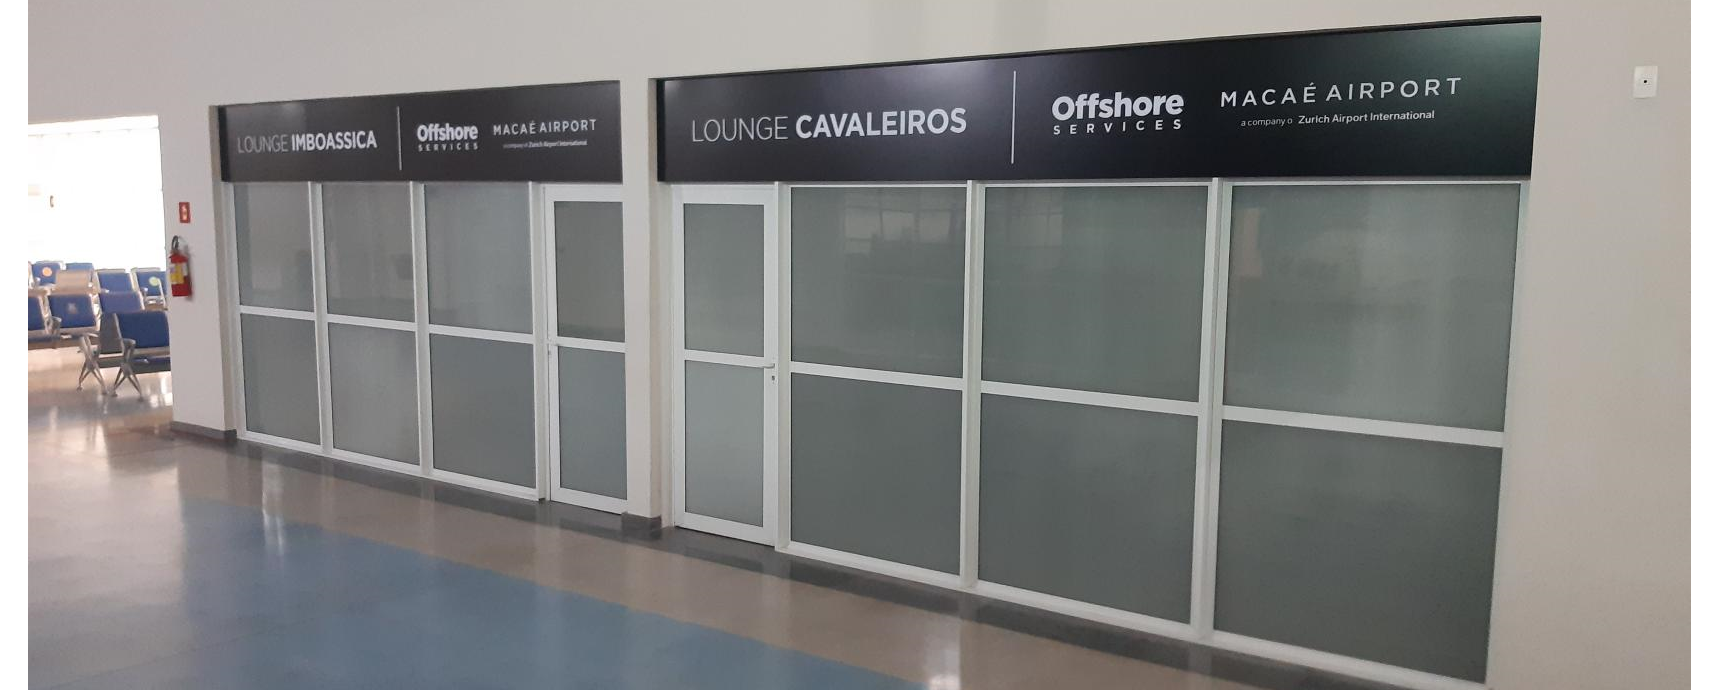 Aeroporto de Macaé inaugura primeira estrutura de lounges em aeroportos dedicados a operação offshore no Brasil